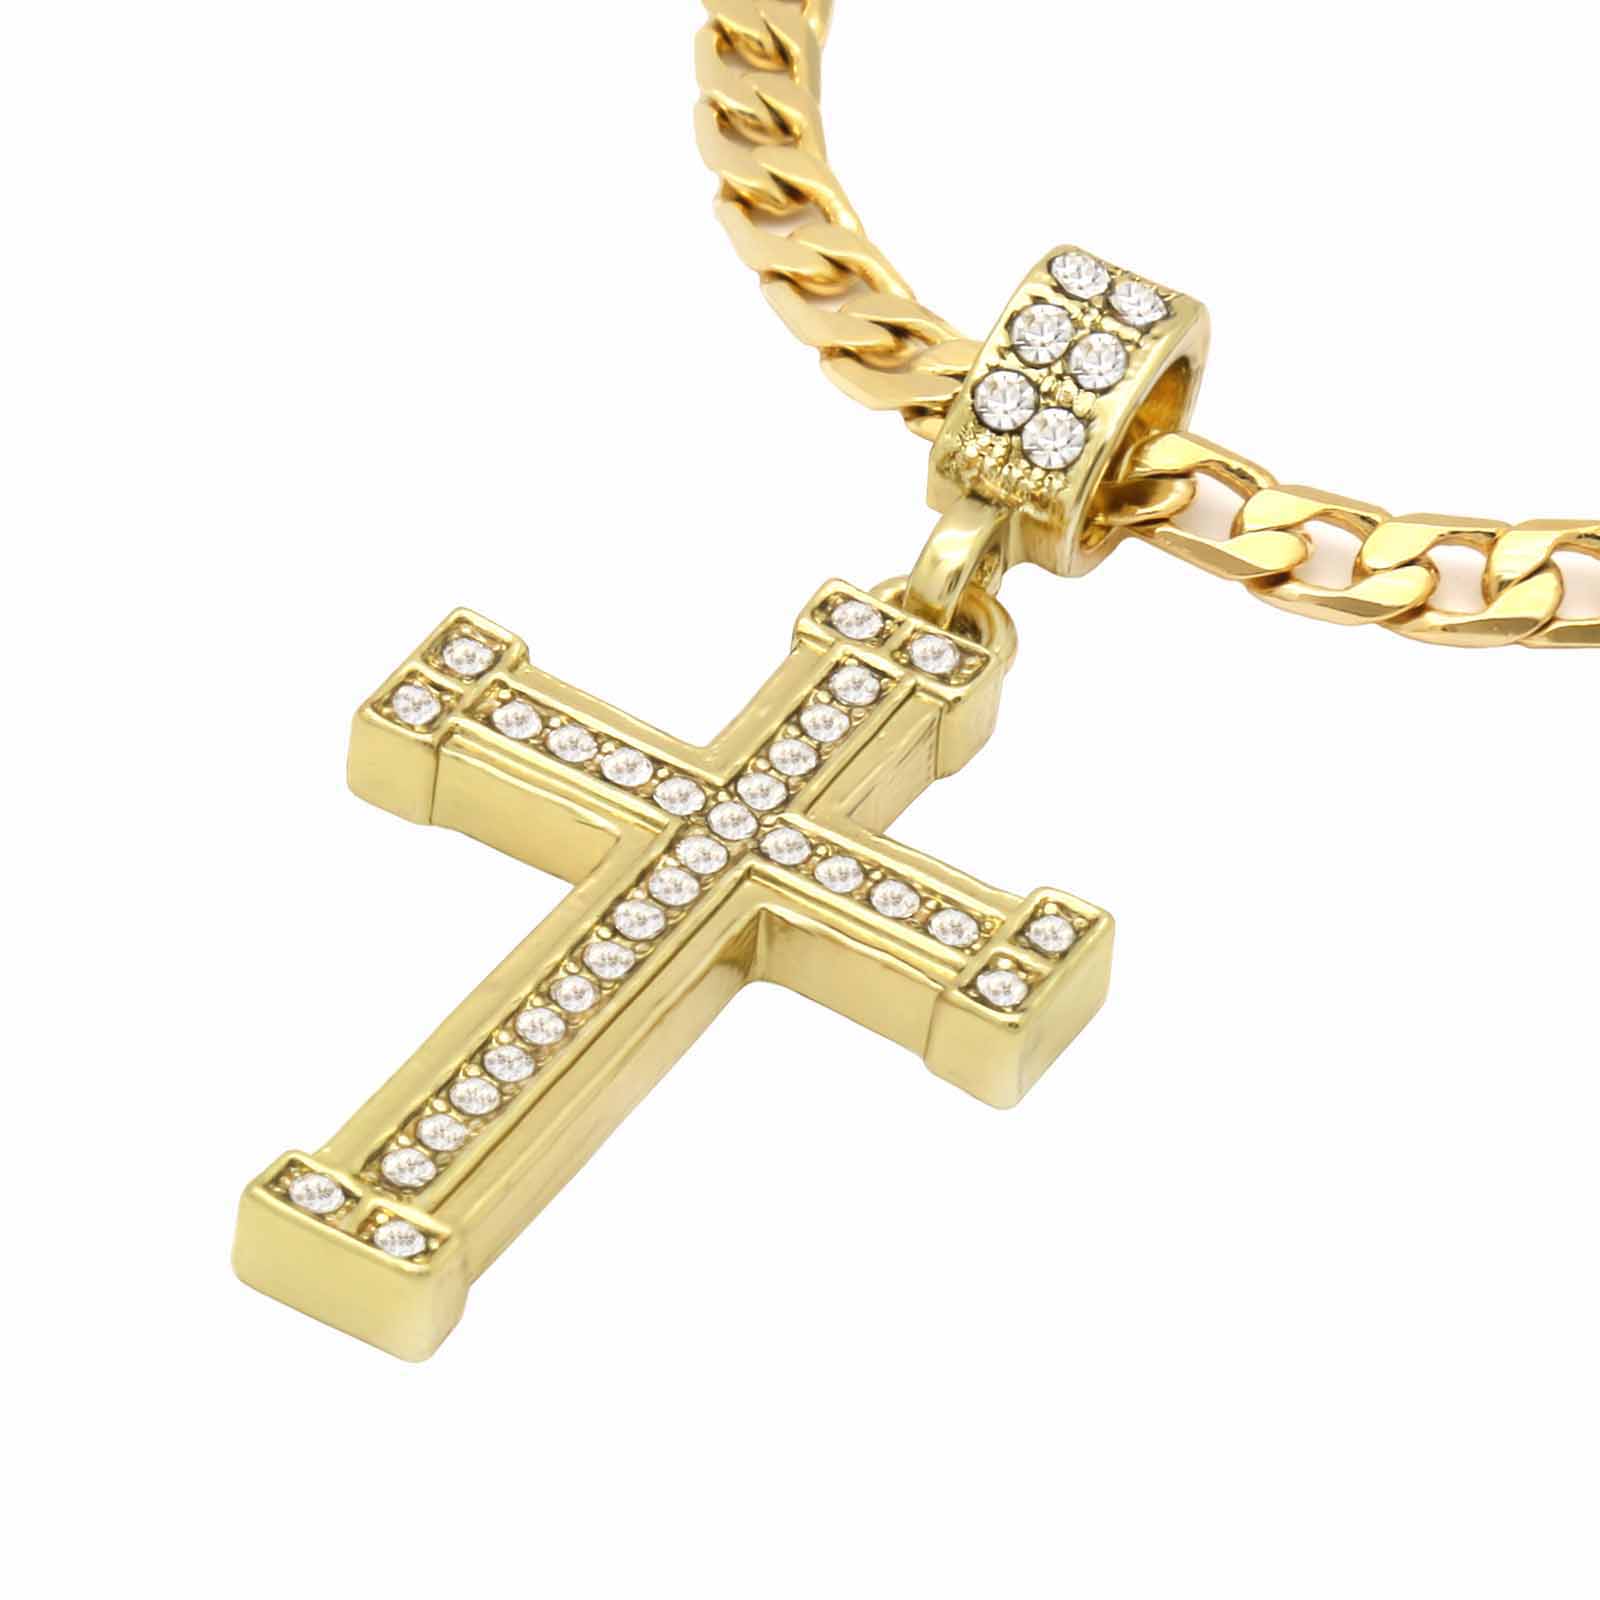 The Cz Staple Edge Cross Necklace 11